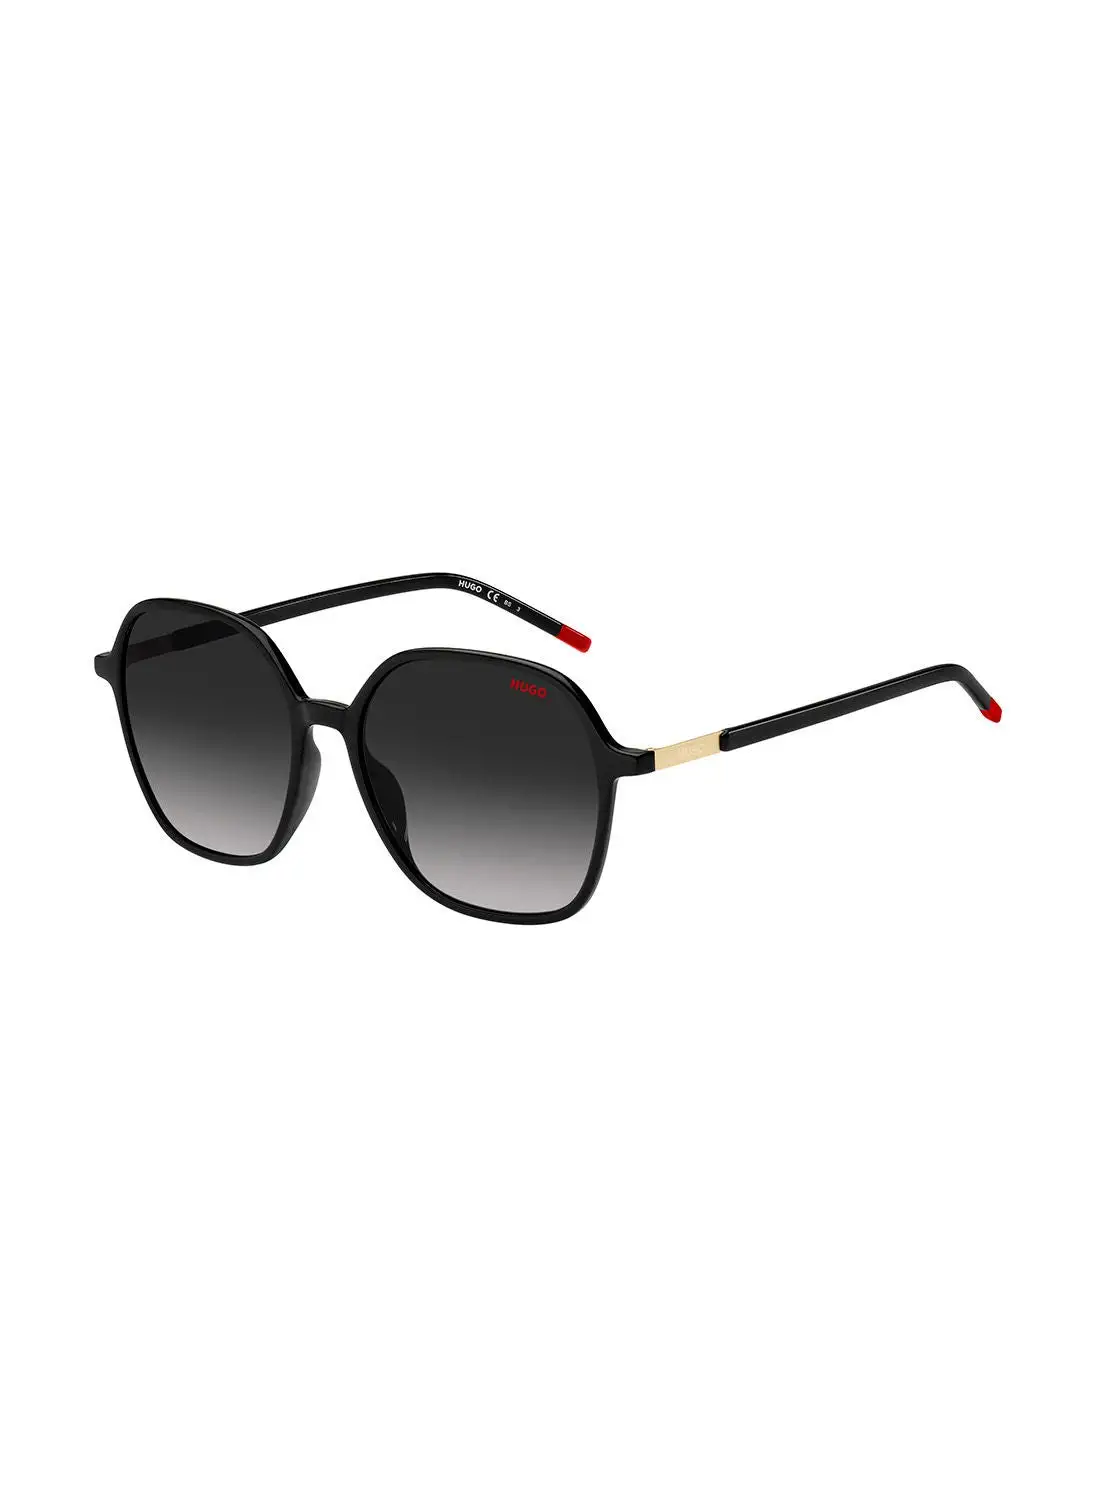 HUGO Women's UV Protection Octagonal Sunglasses - Hg 1236/S Black 55 - Lens Size: 55 Mm